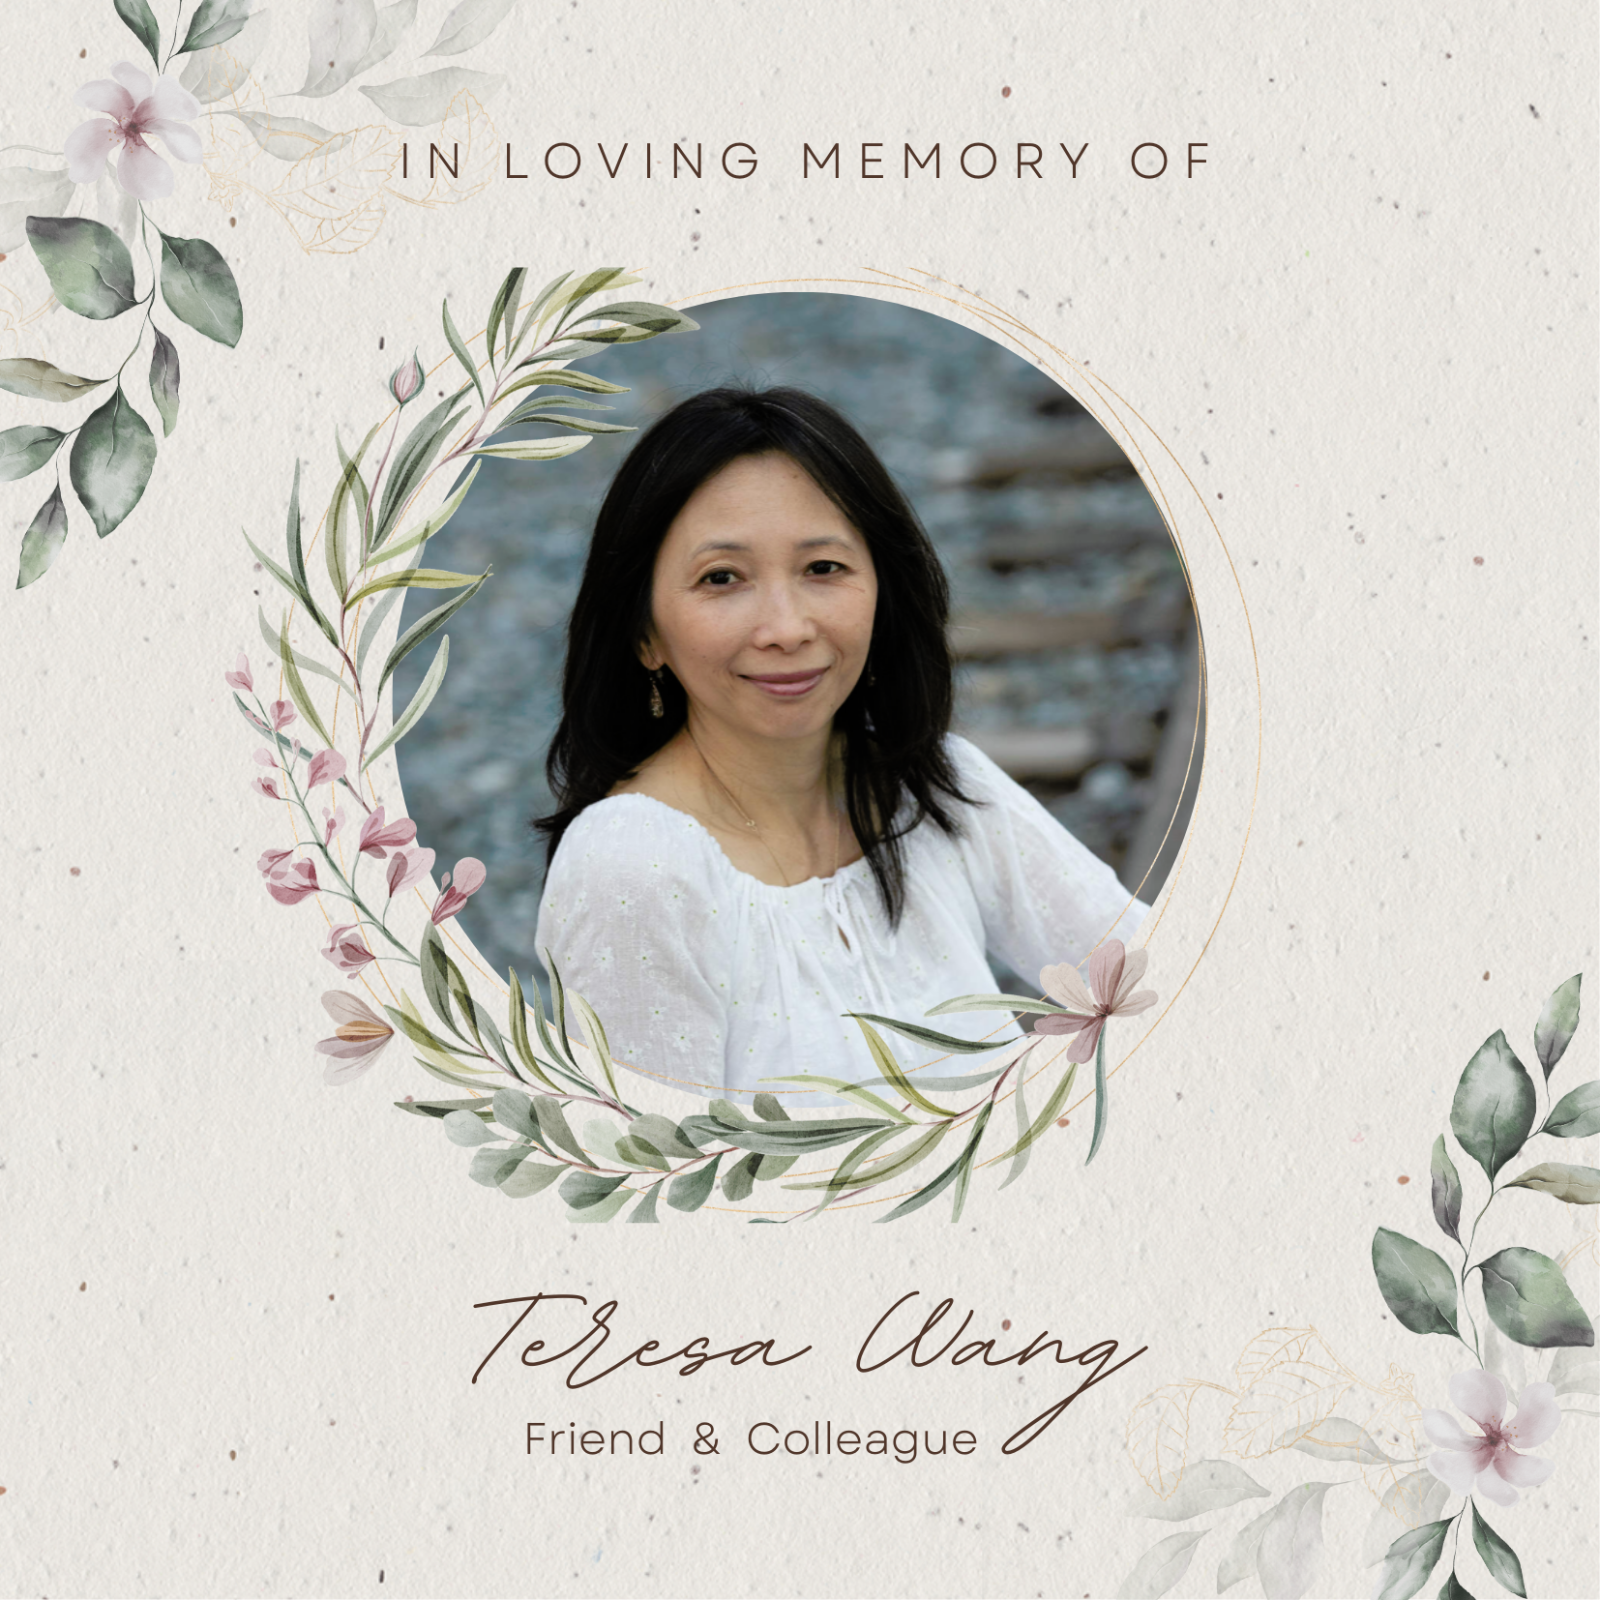 In Memory of Teresa Wang